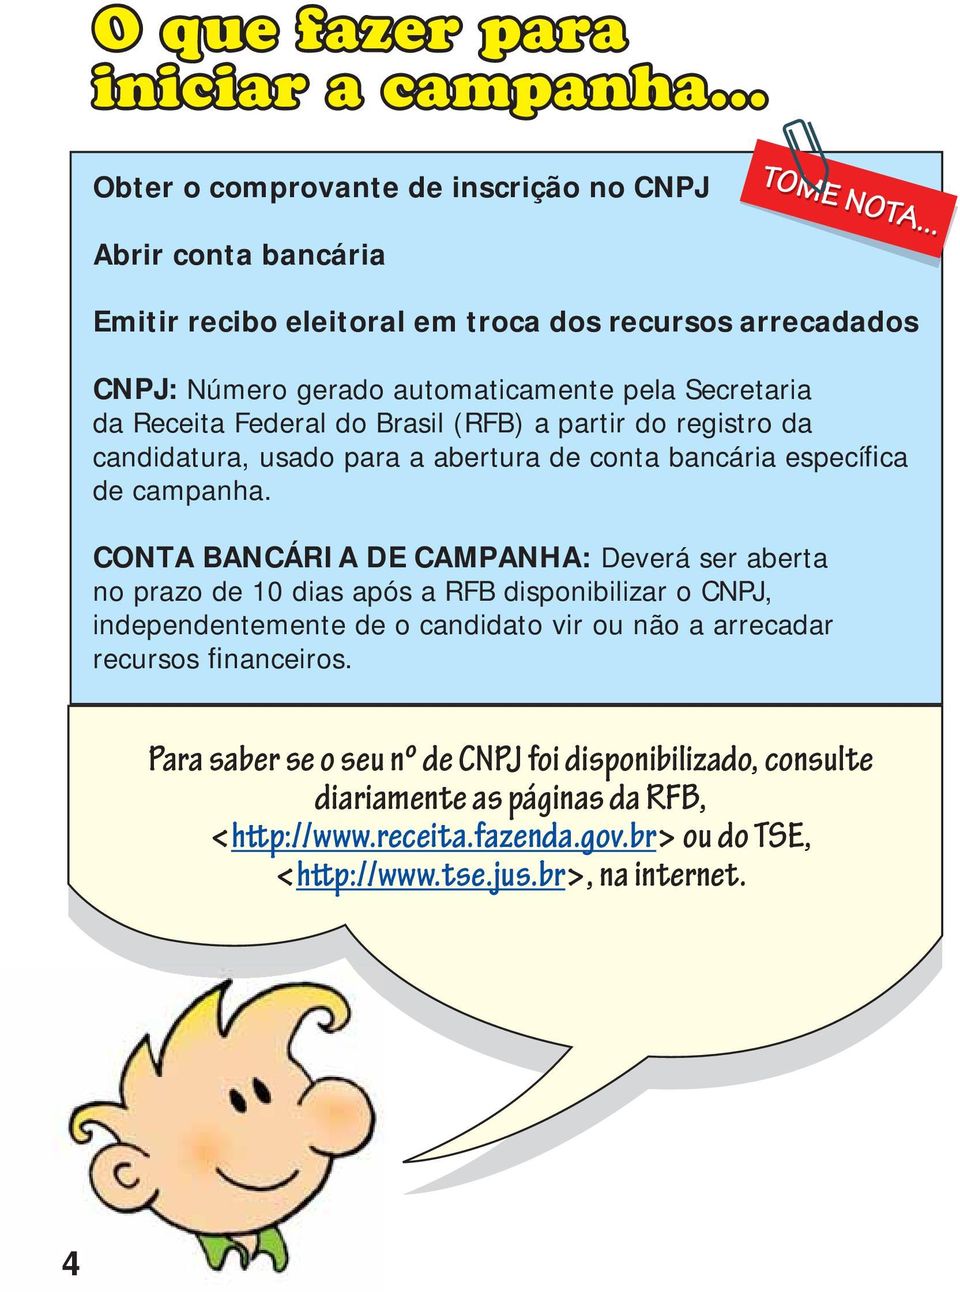 da Receita Federal do Brasil (RFB) a partir do registro da candidatura, usado para a abertura de conta bancária específica de campanha.